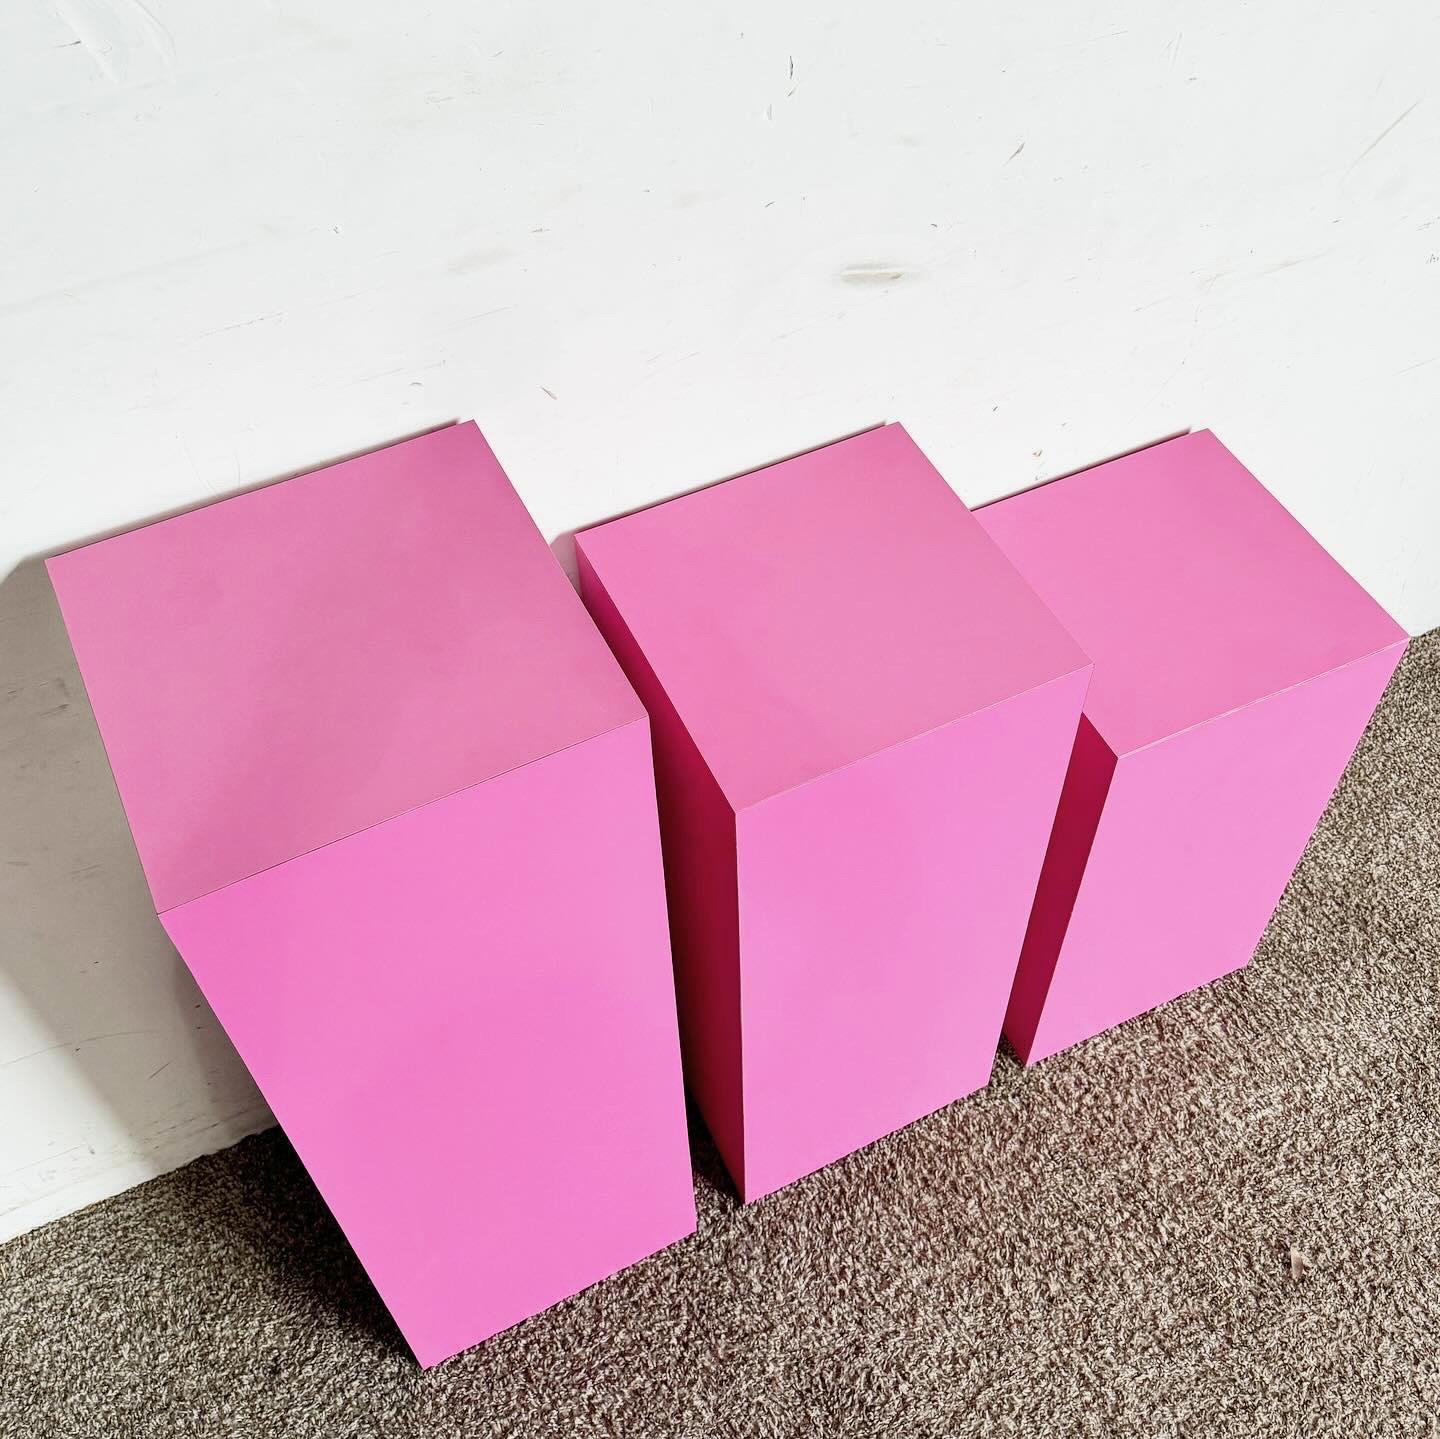 Wood Postmodern Pink Matte Laminate Ascending Rectangular Pedestal Set - Set of 3 For Sale